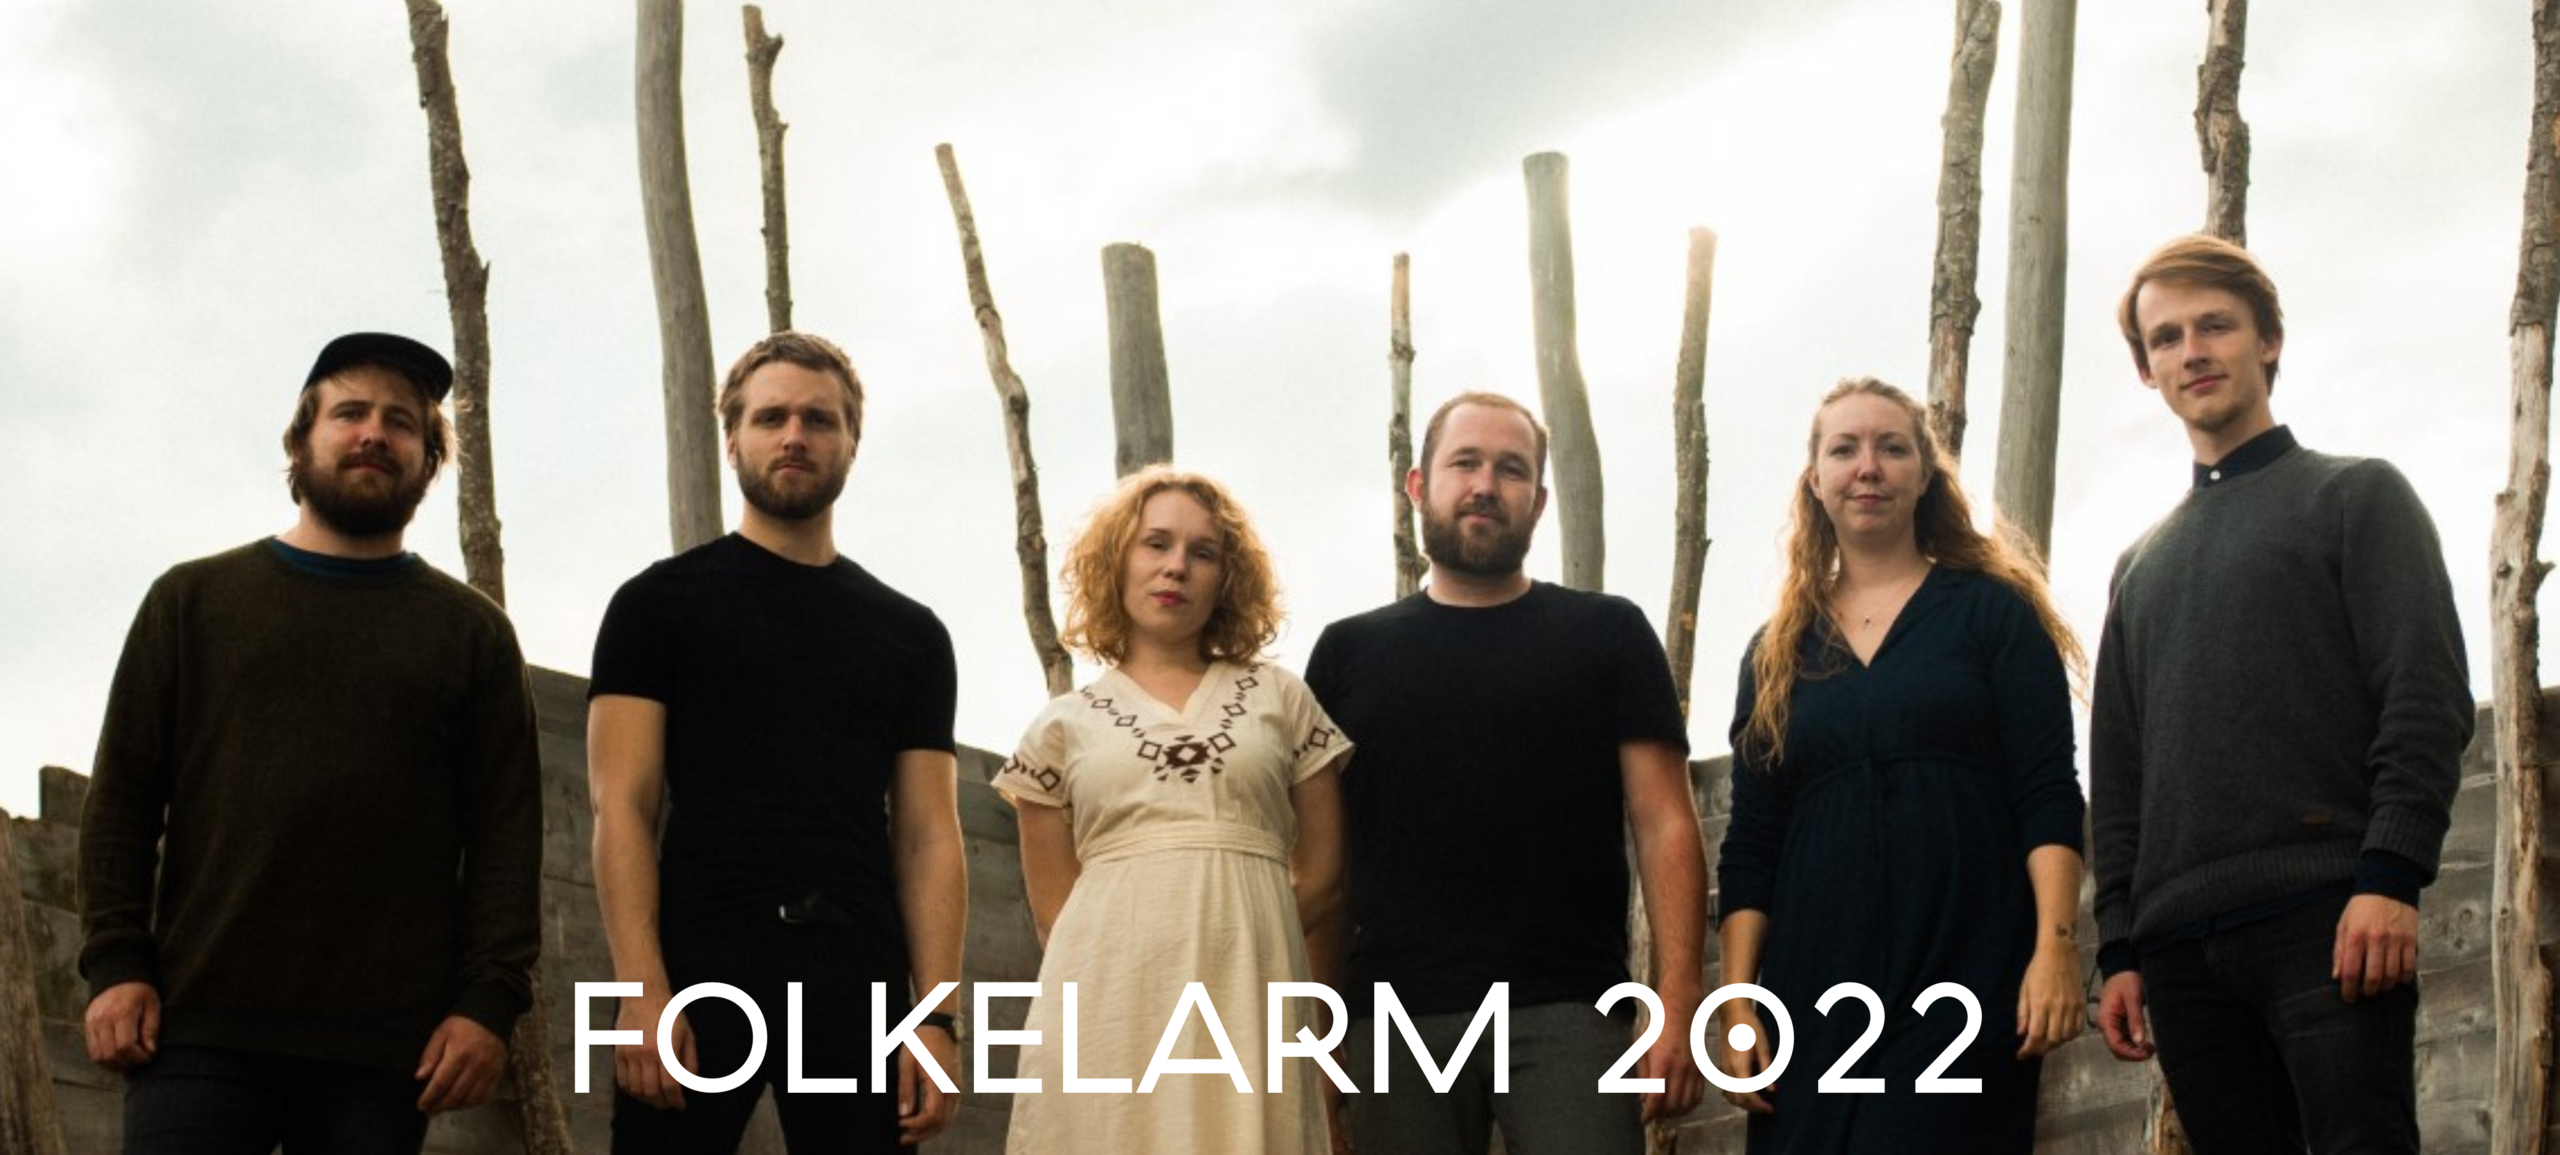 VIIK - Folkelarmartist 2022